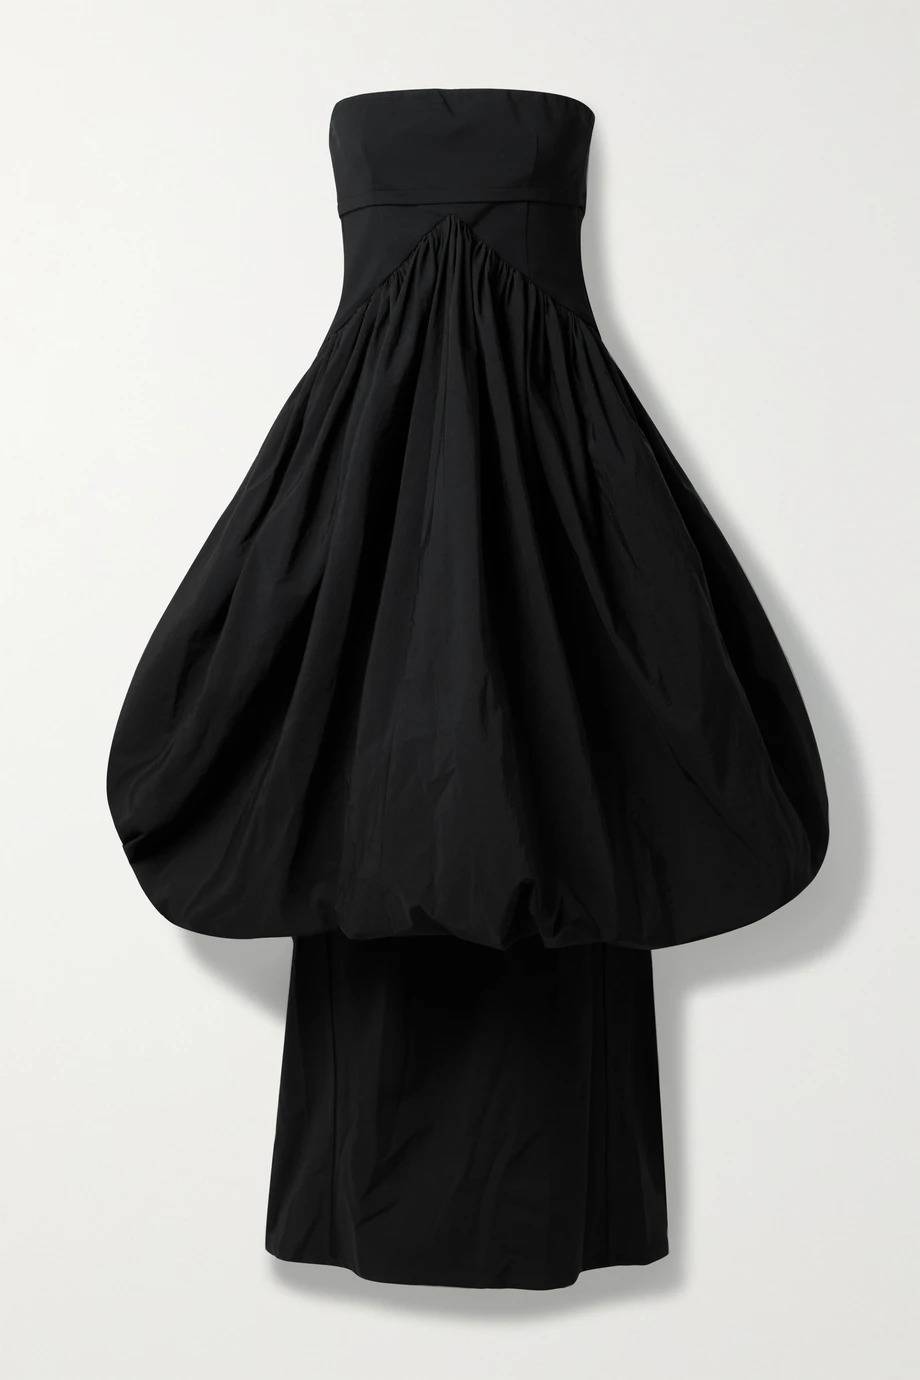 Sukienka Christopher Esber/ Net-a-Porter ok. 3800 zł (Fot. materiały prasowe)